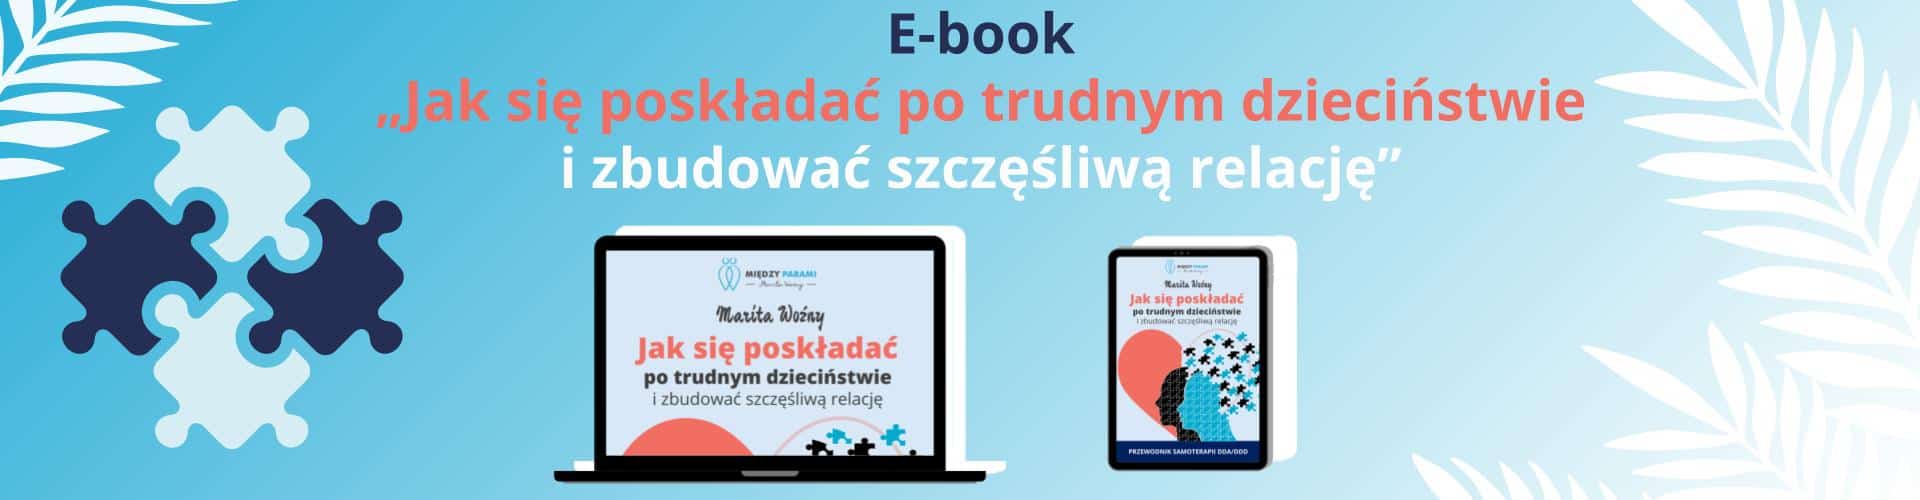 Baner e-booka „Jak się poskładać po trudnym dzieciństwie"